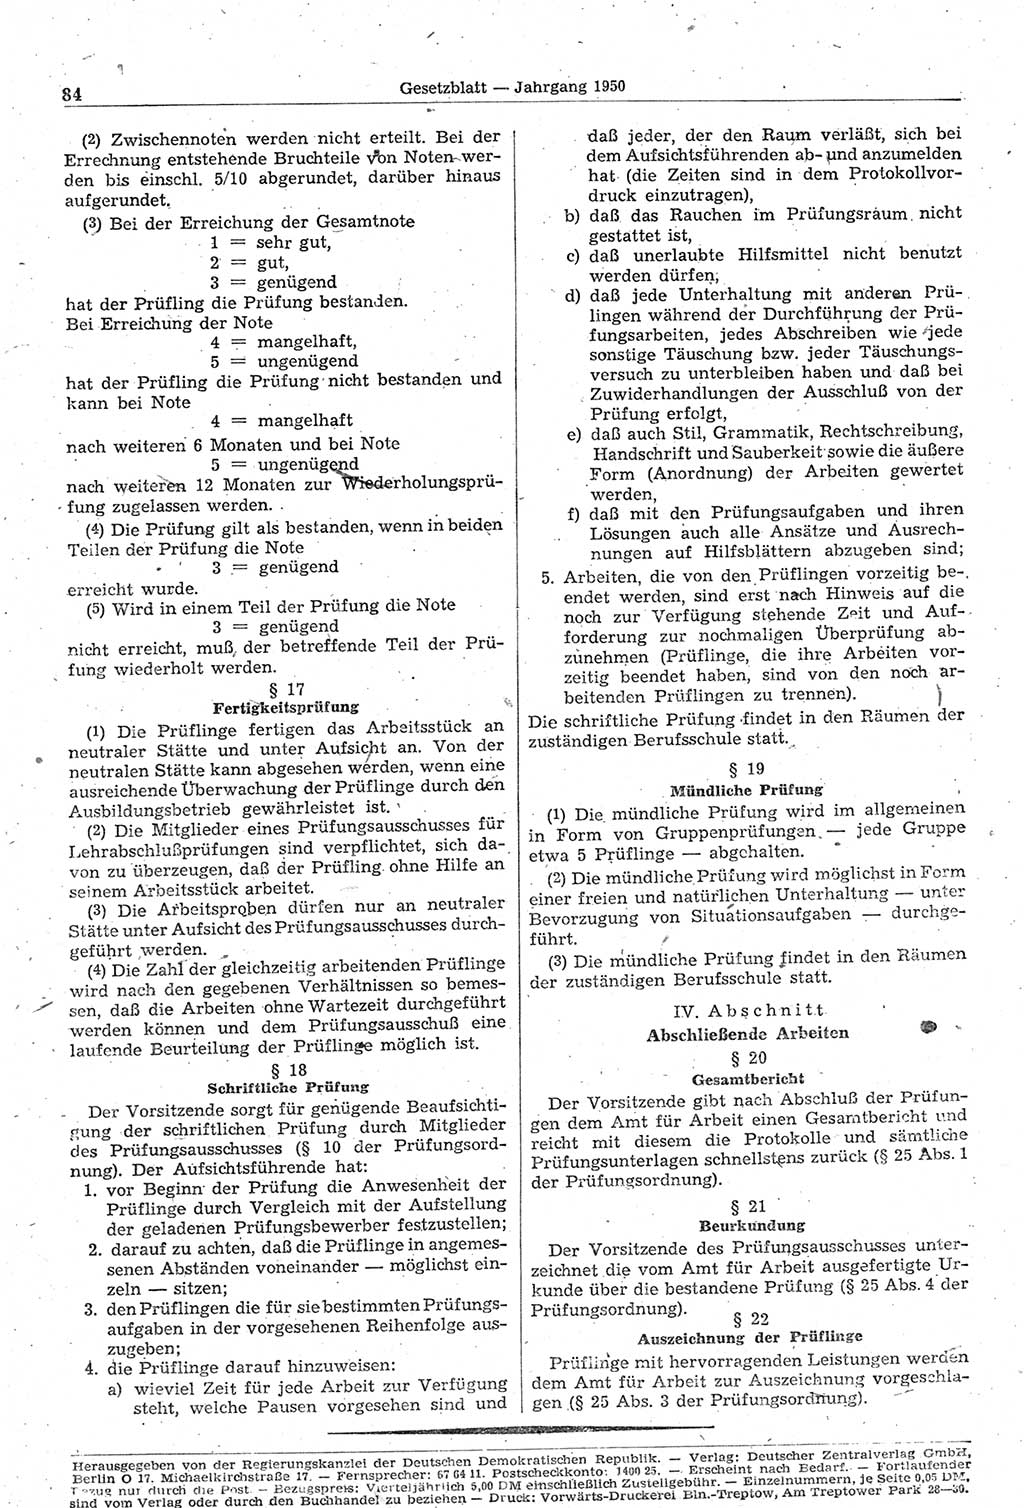 Gesetzblatt (GBl.) der Deutschen Demokratischen Republik (DDR) 1950, Seite 84 (GBl. DDR 1950, S. 84)